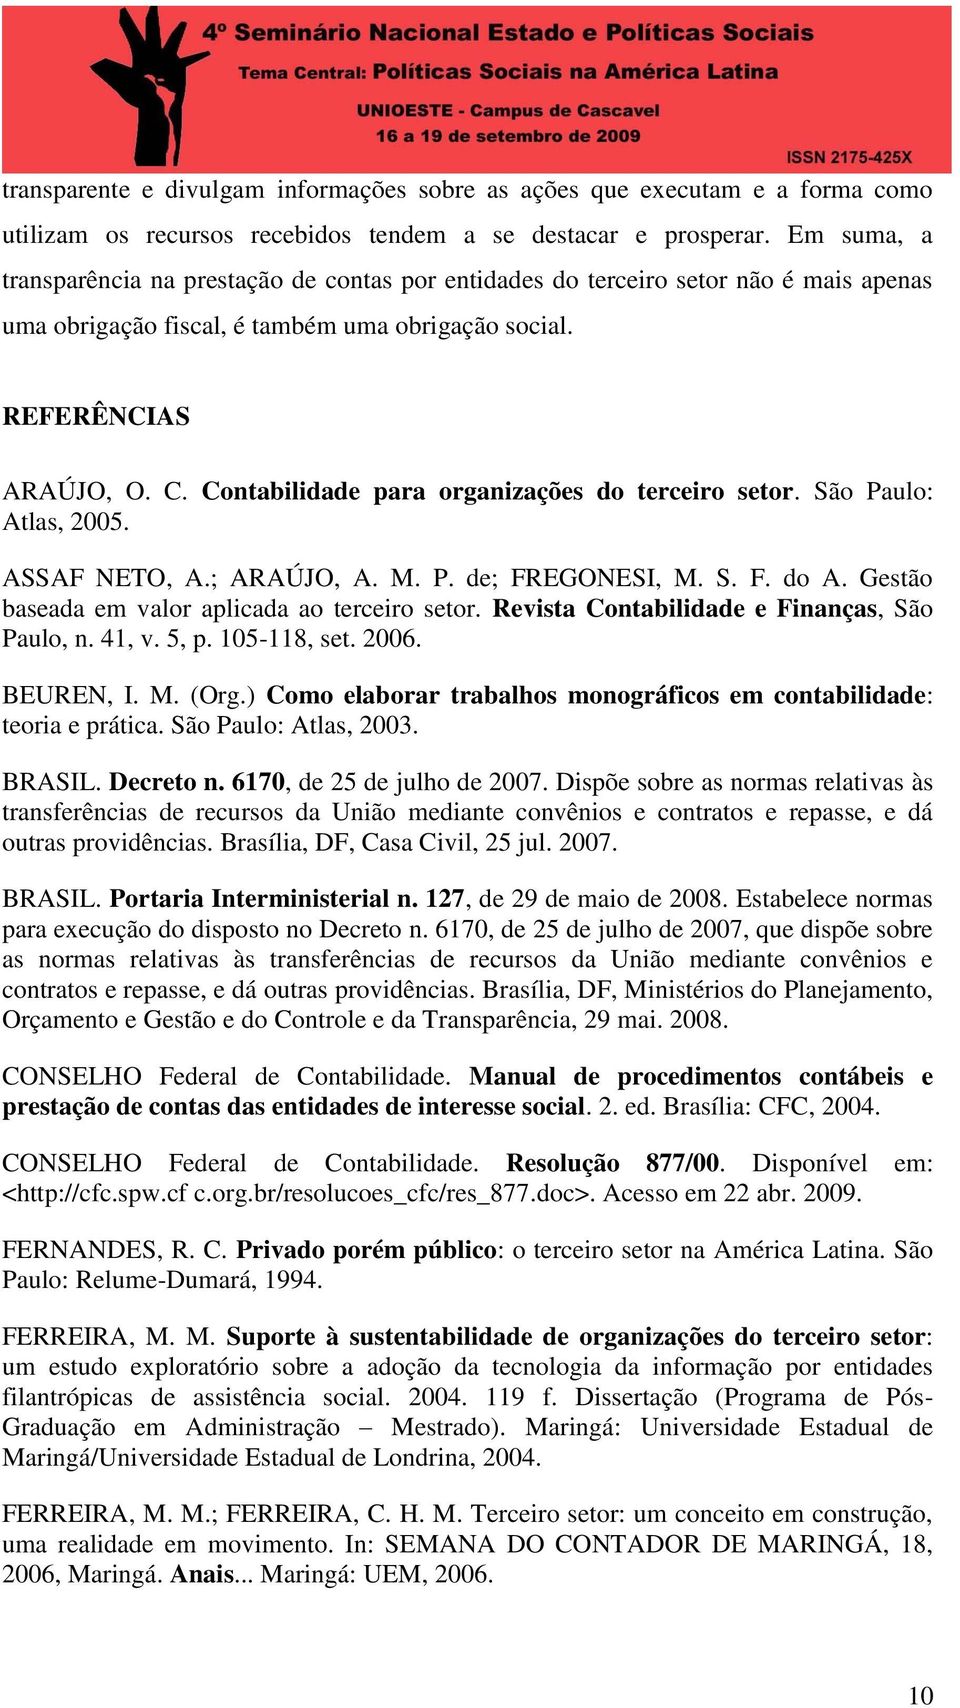 Contabilidade para organizações do terceiro setor. São Paulo: Atlas, 2005. ASSAF NETO, A.; ARAÚJO, A. M. P. de; FREGONESI, M. S. F. do A. Gestão baseada em valor aplicada ao terceiro setor.